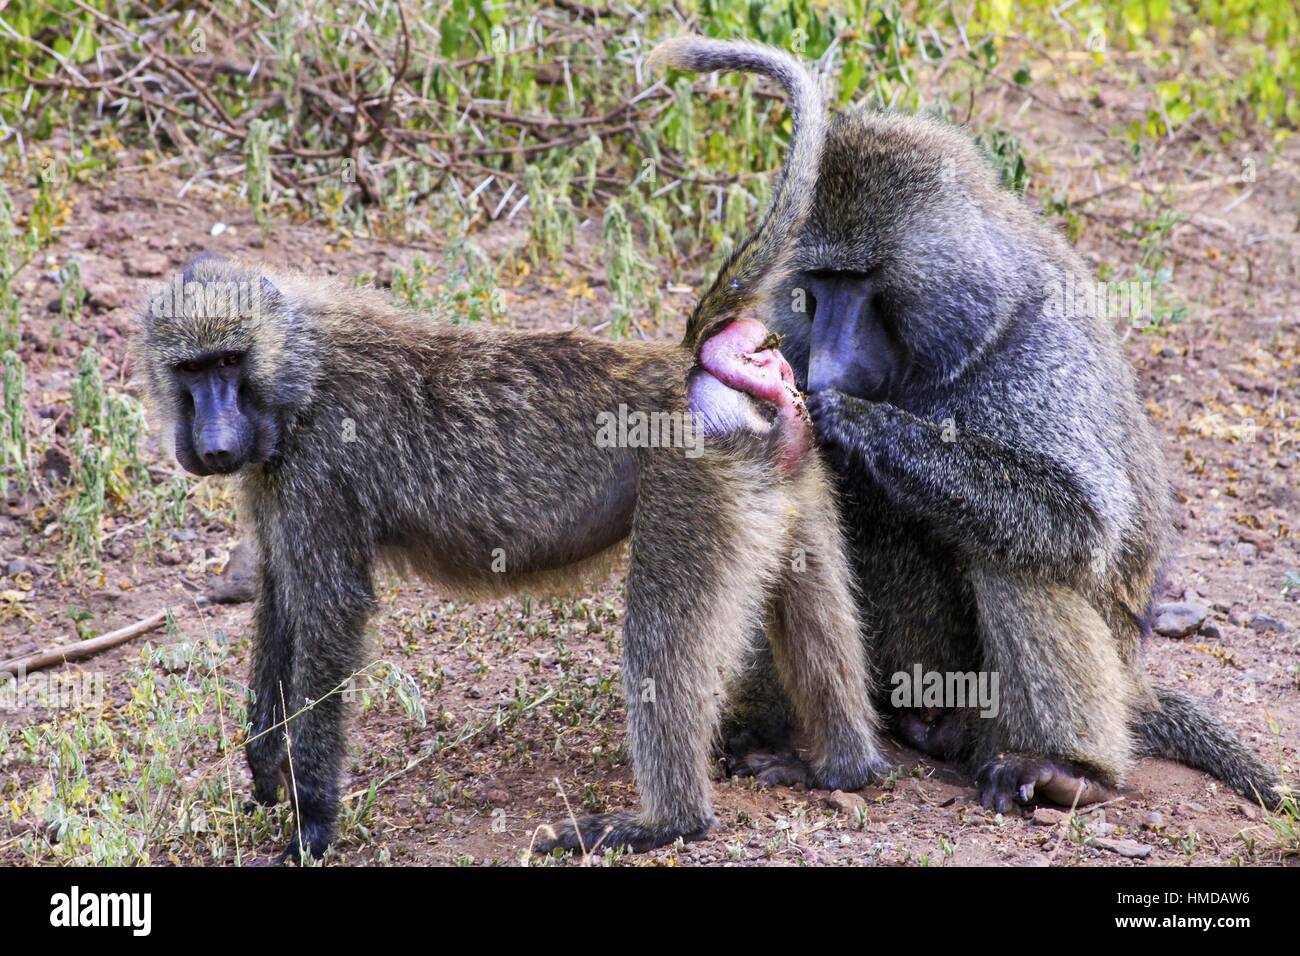 Papio Hamadryas Baboon Monkeys. Primate Baboon scimmia rituali di accoppiamento comportamento naturale. Parco nazionale del Serengeti Safari riserva animale Tanzania Africa Foto Stock